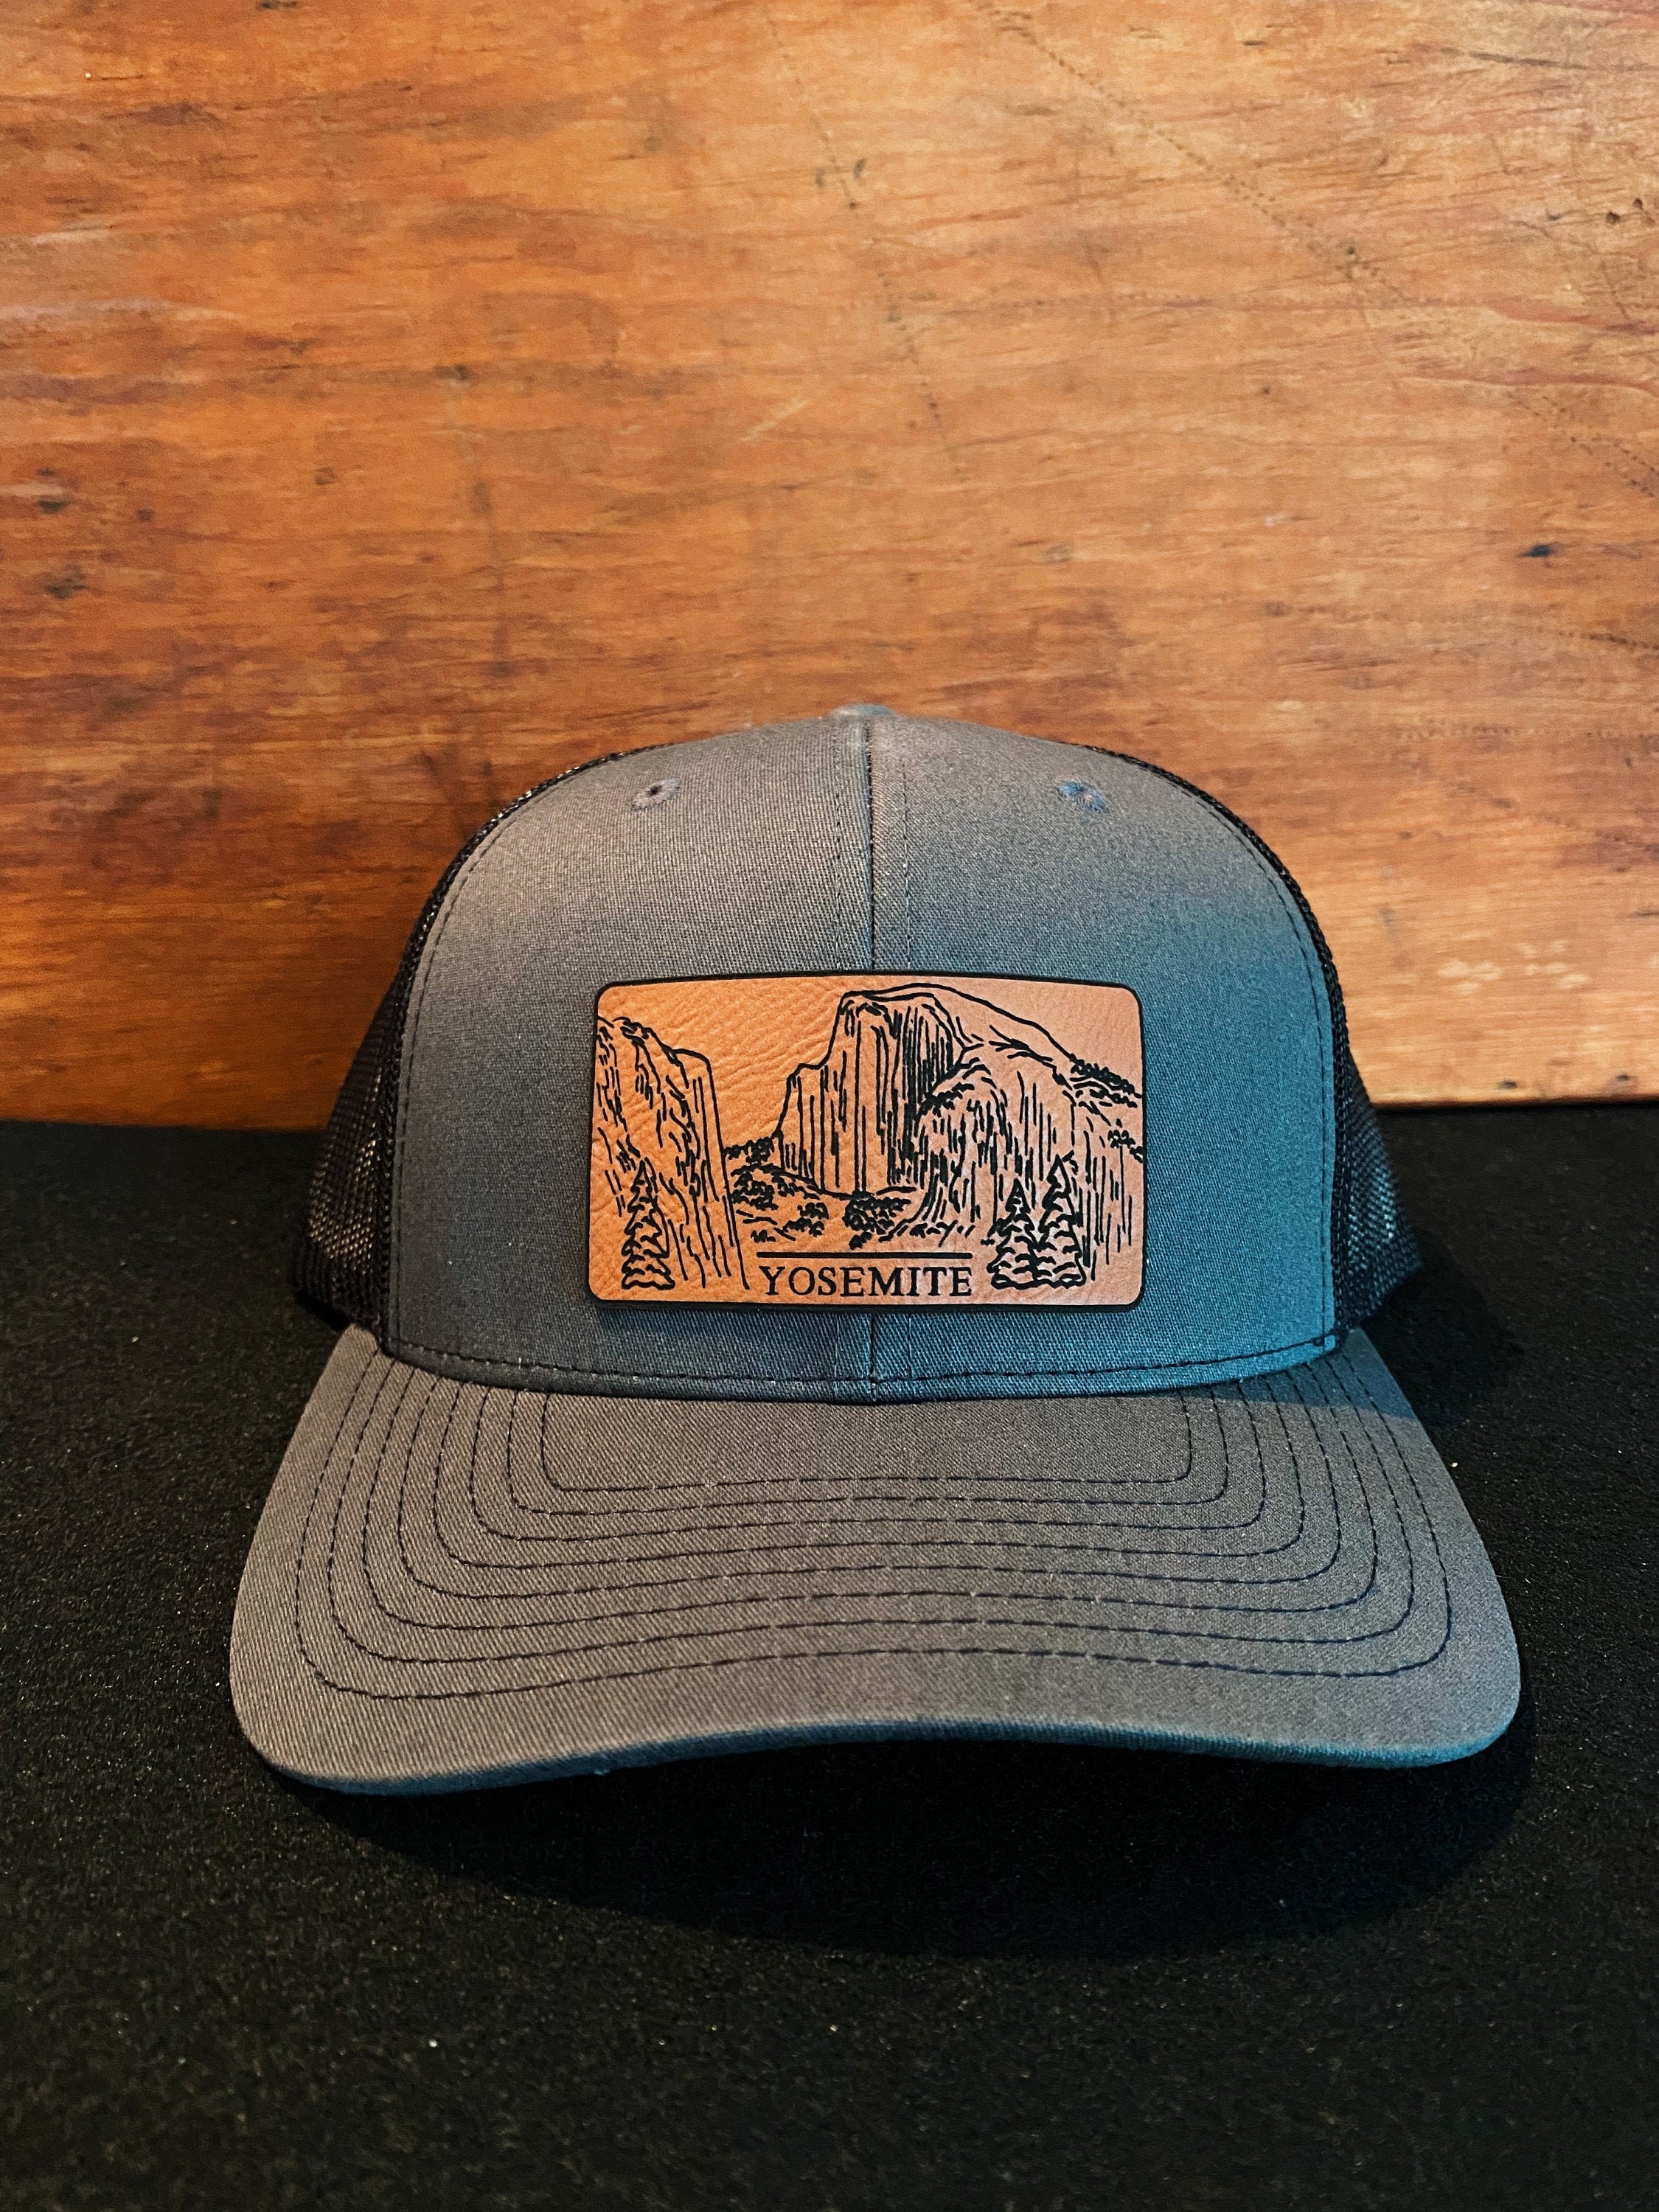 Yosemite California Brown  Snapback Mesh Trucker Hat Cap 